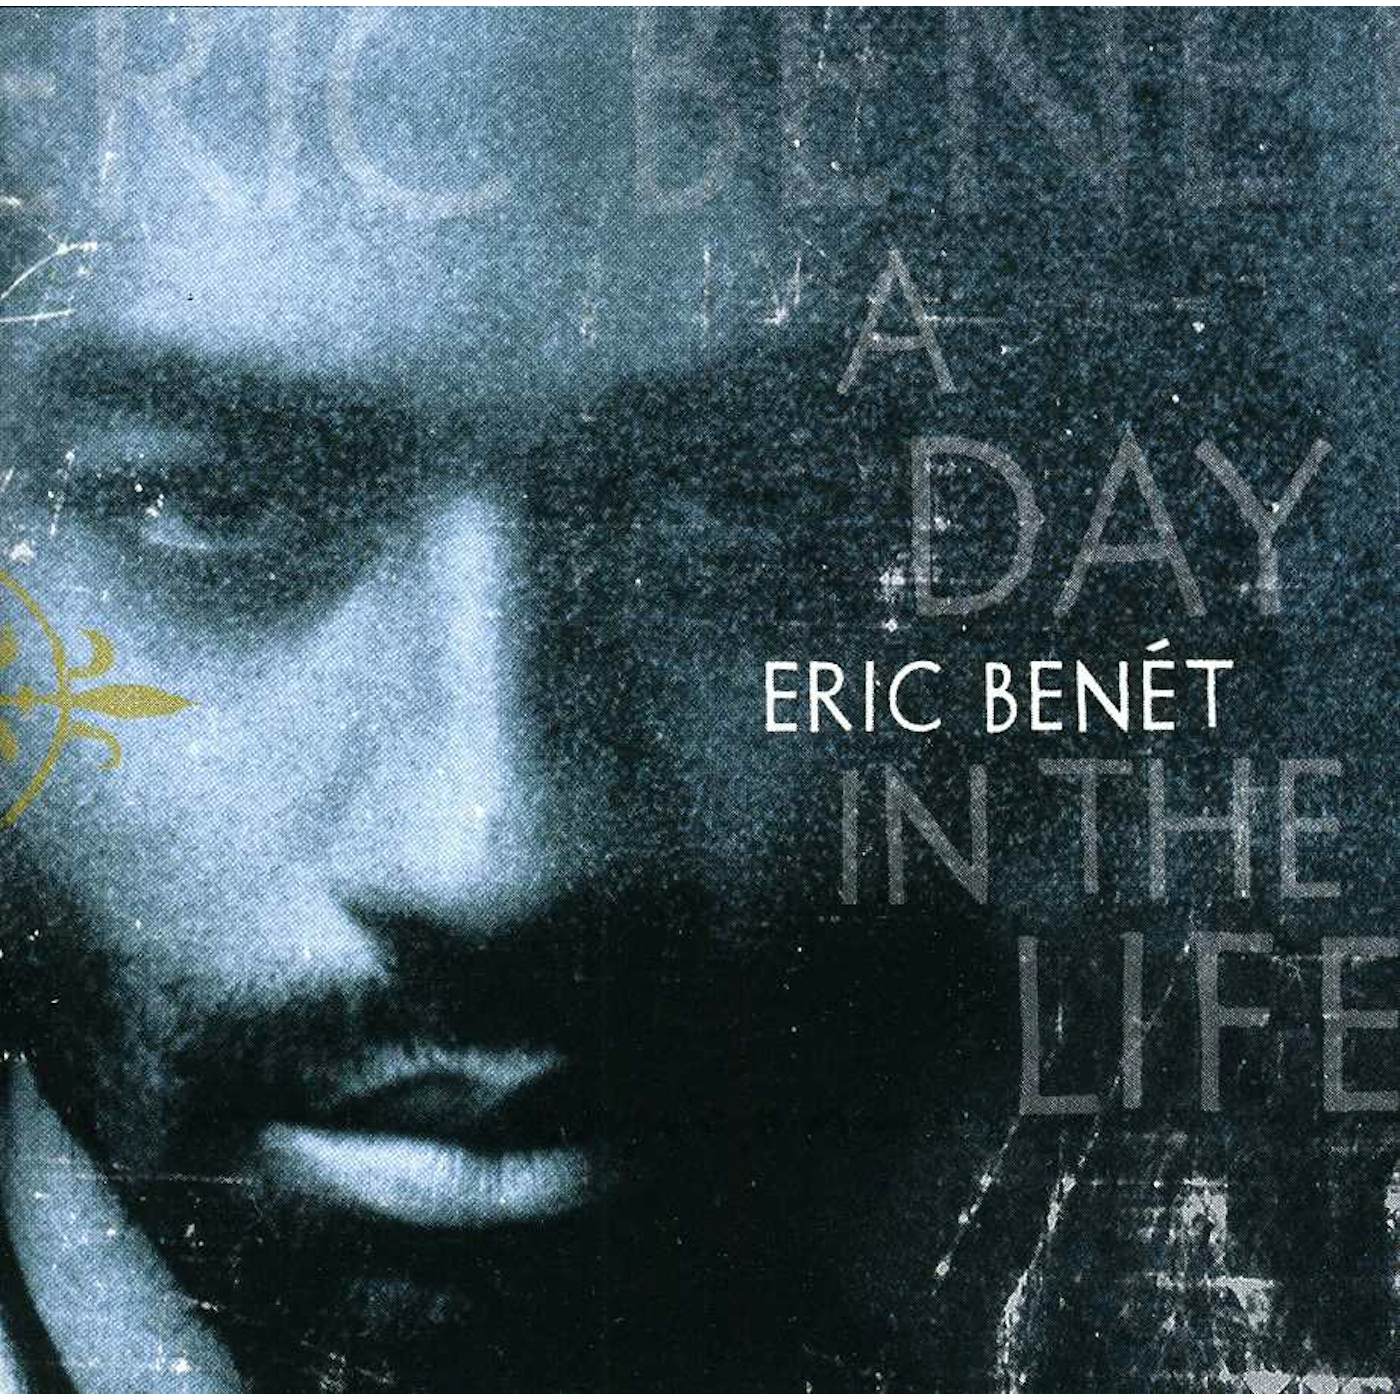 Eric Benét DAY IN THE LIFE CD